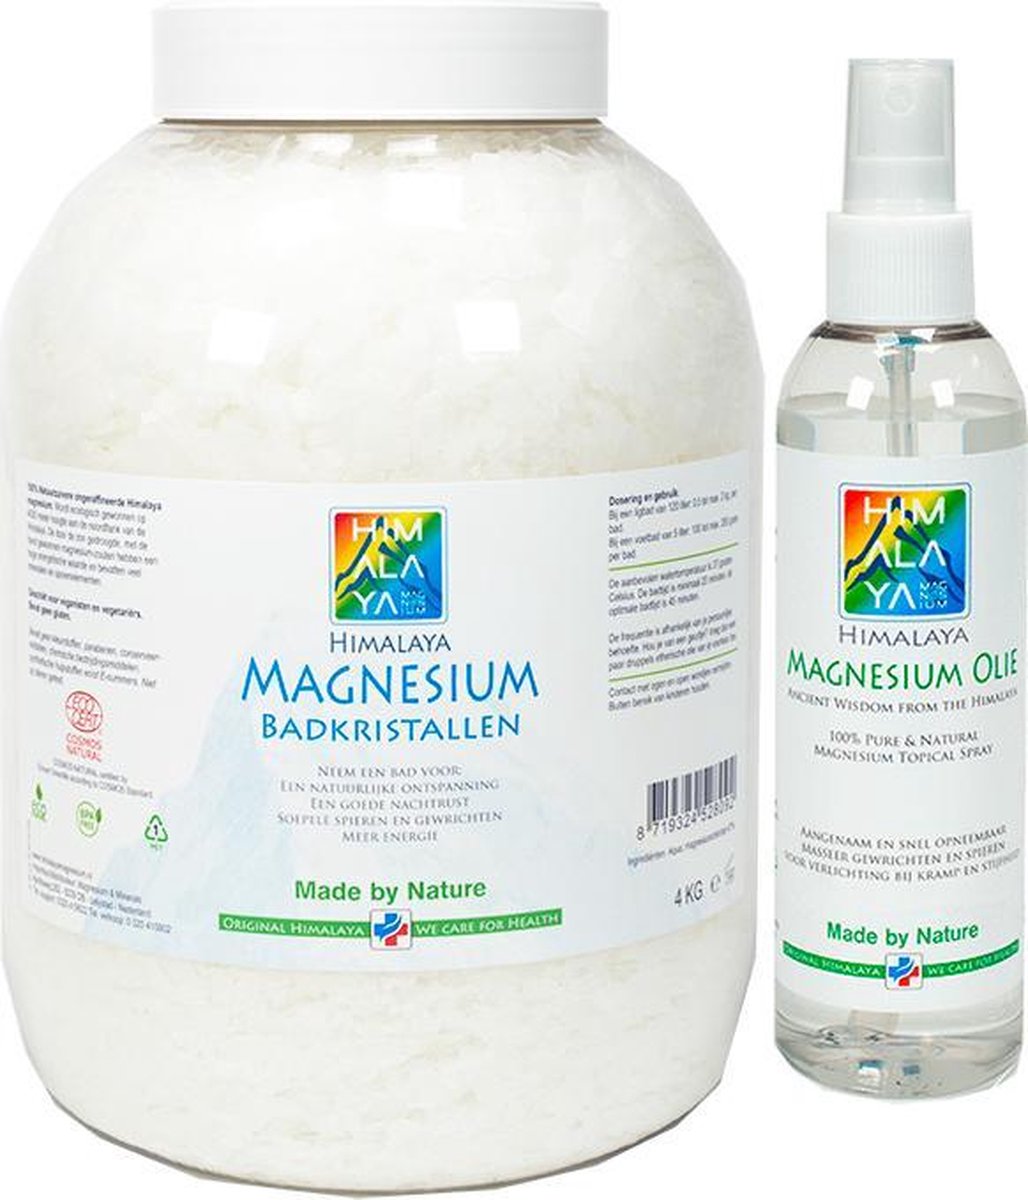 Magnesiumolie spray 200 ml en Magnesium vlokken-badkristallen 4 kg van Himalaya magnesium | Food kwaliteit | Magnesiumchloride voor spieren - Himalaya Magnesium